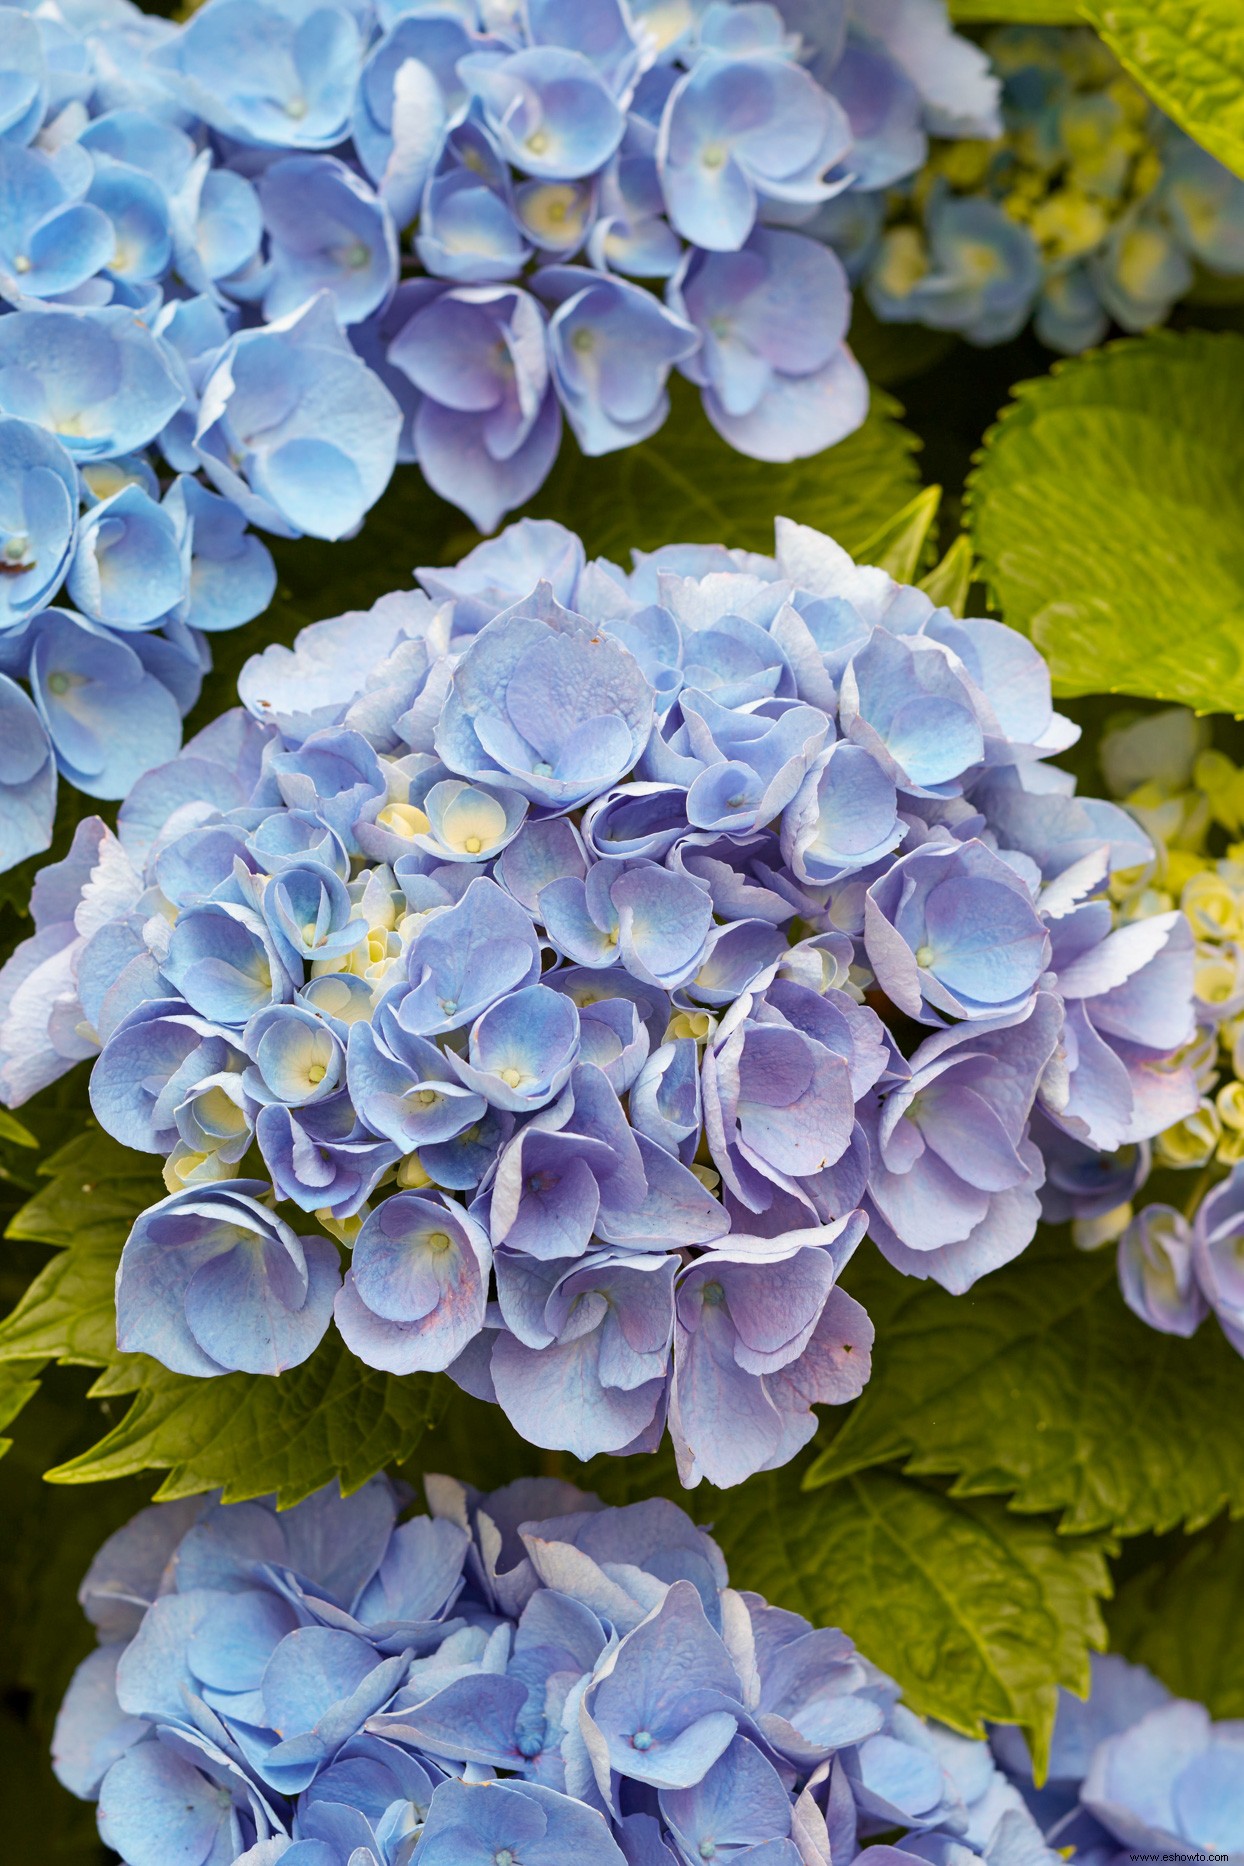 3 trucos para probar con tus hortensias y aprovechar al máximo estas hermosas flores 